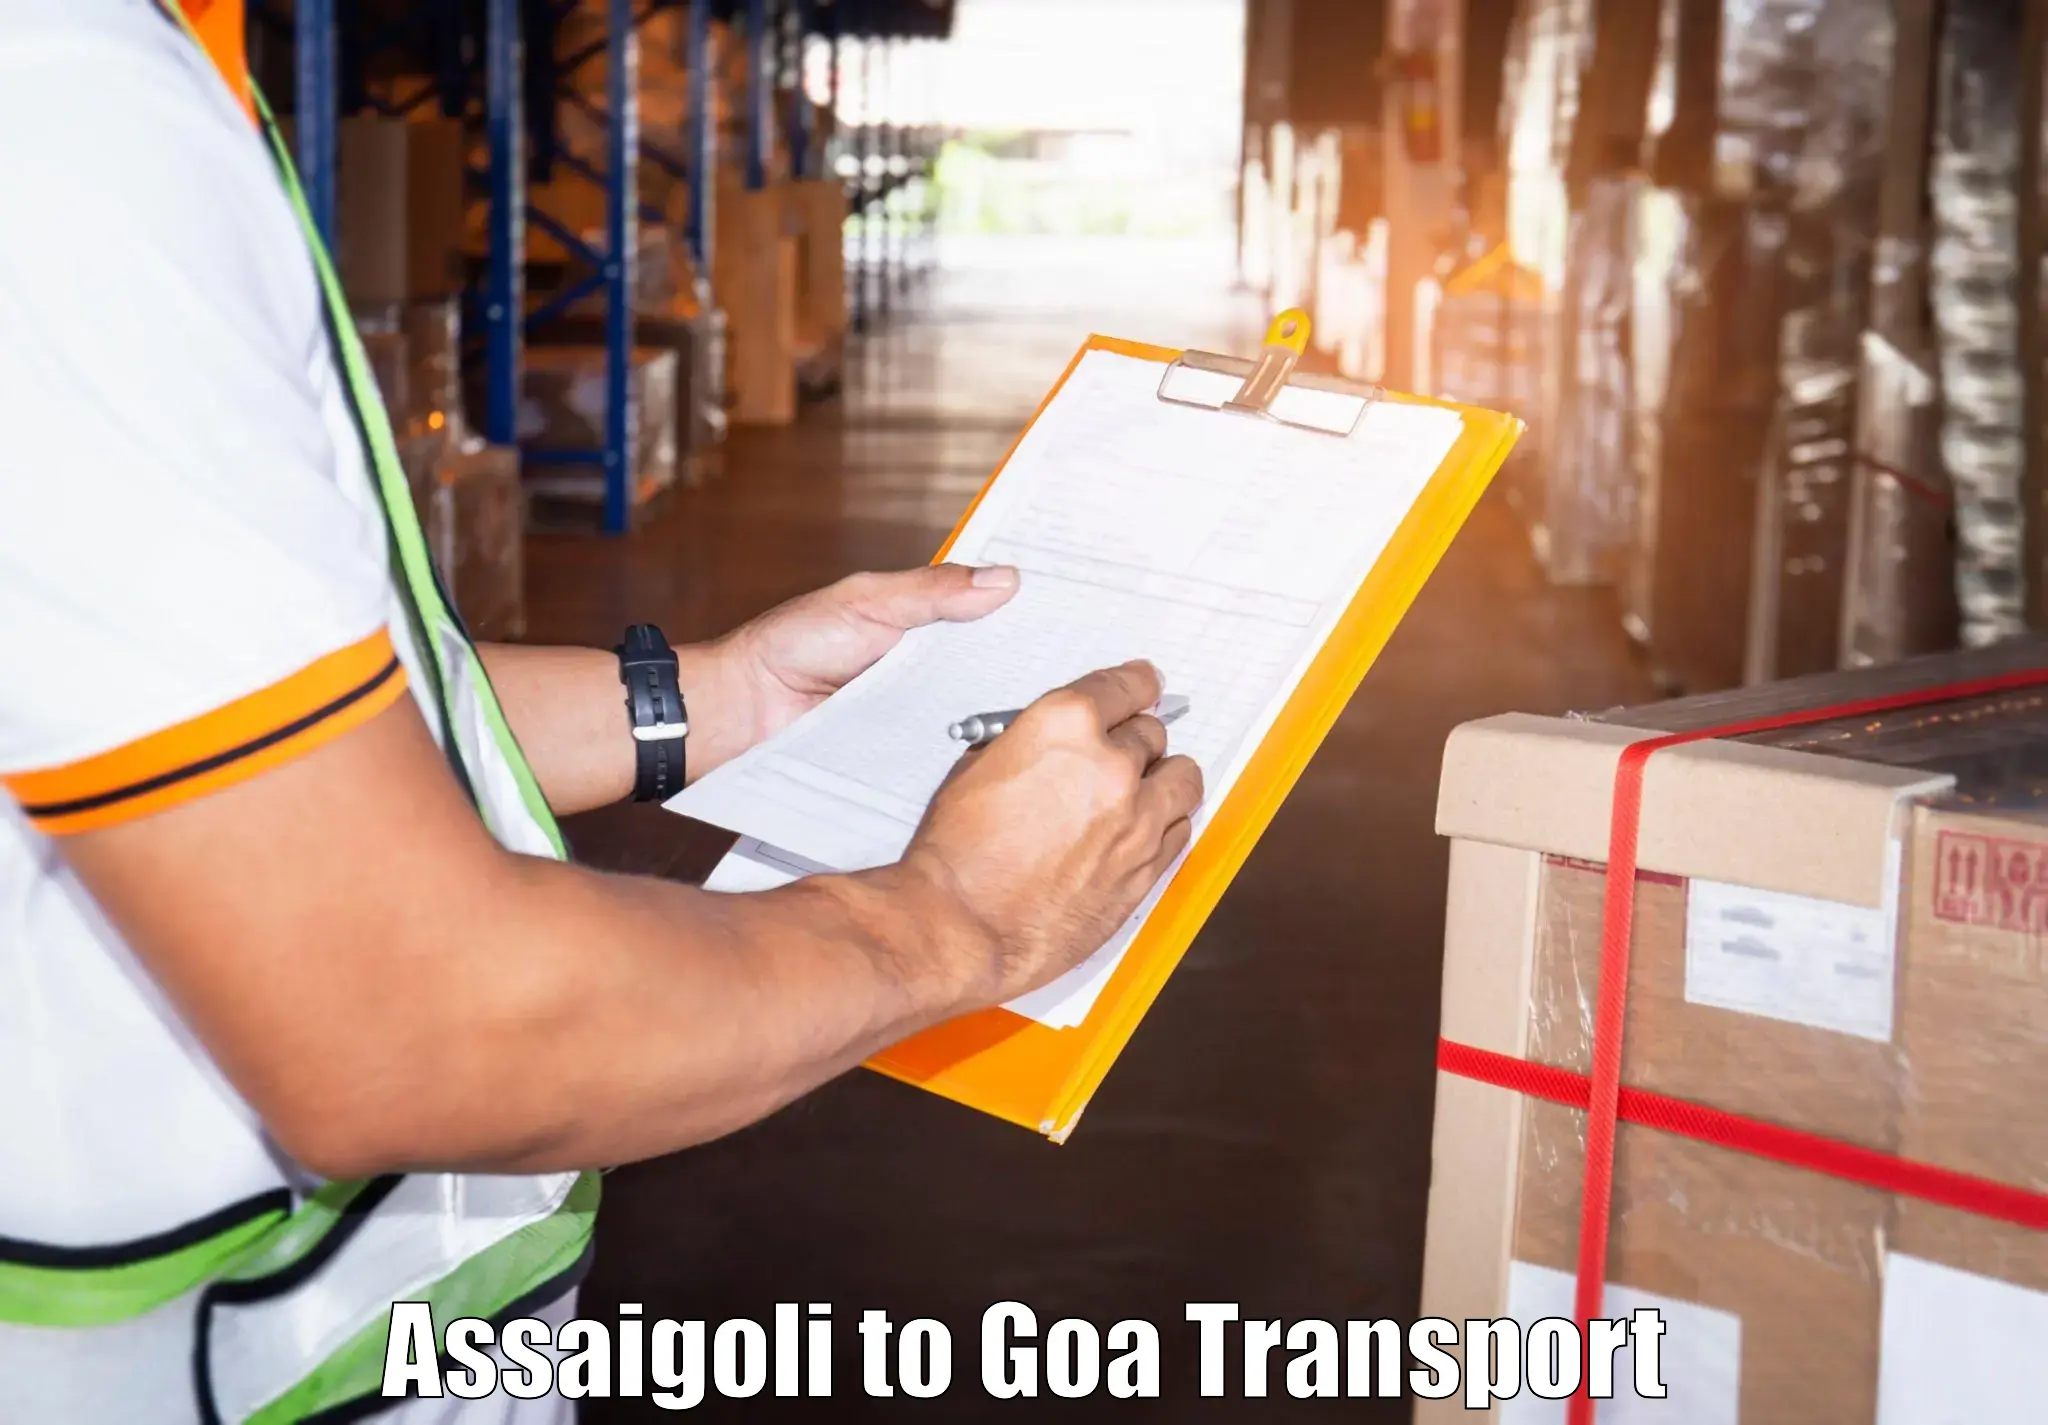 Cargo train transport services Assaigoli to Vasco da Gama